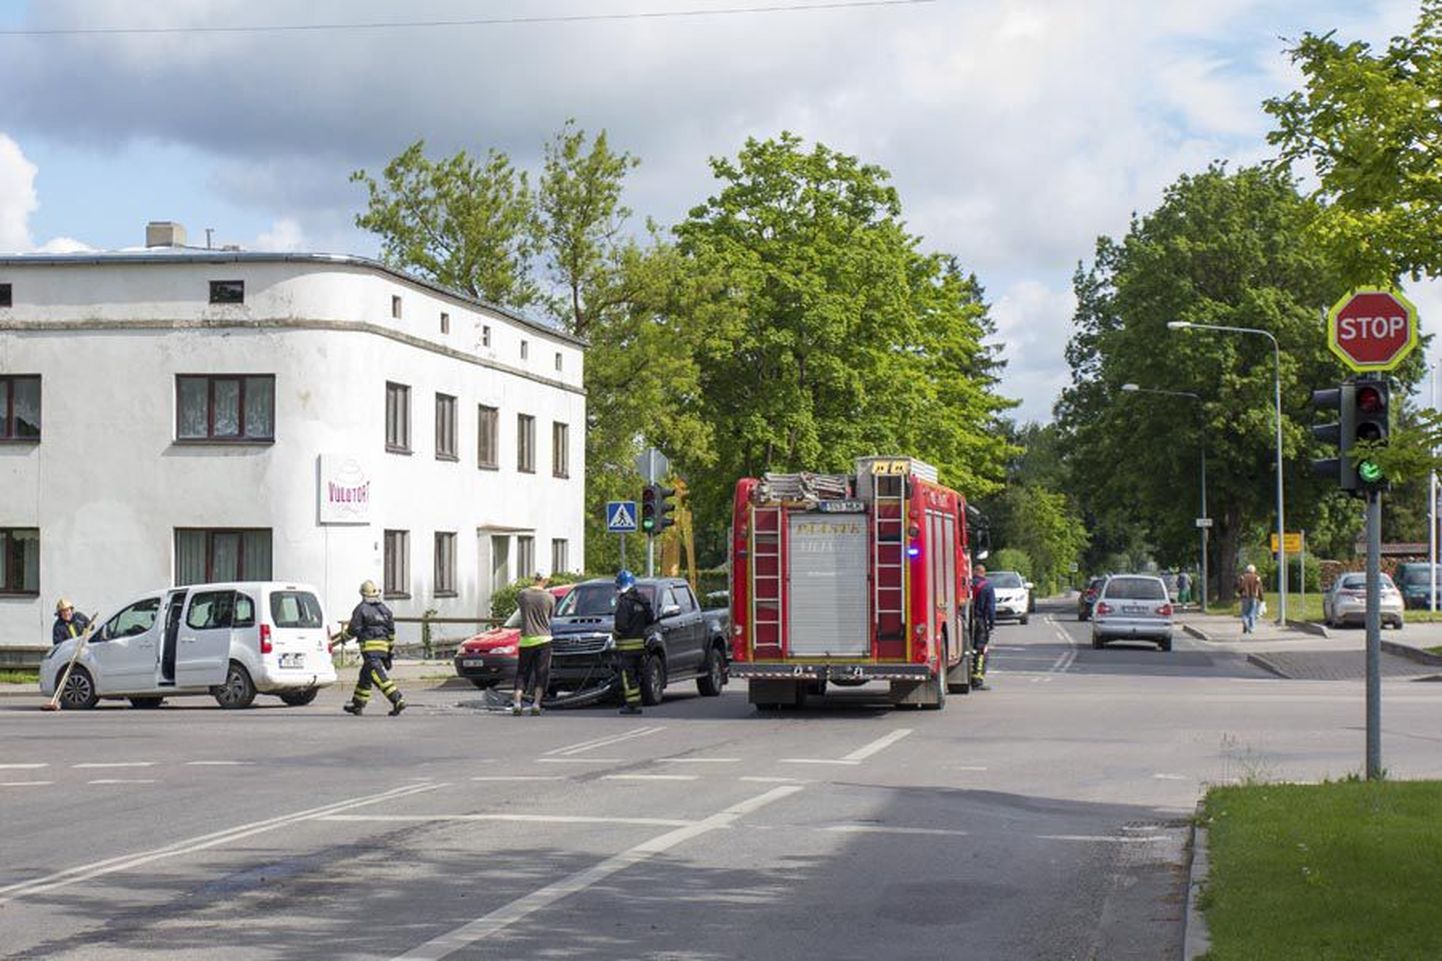 Liiklusõnnetus juhtus Leola ja Jakobsoni tänava ristmikul. Foto on illustratiivne.